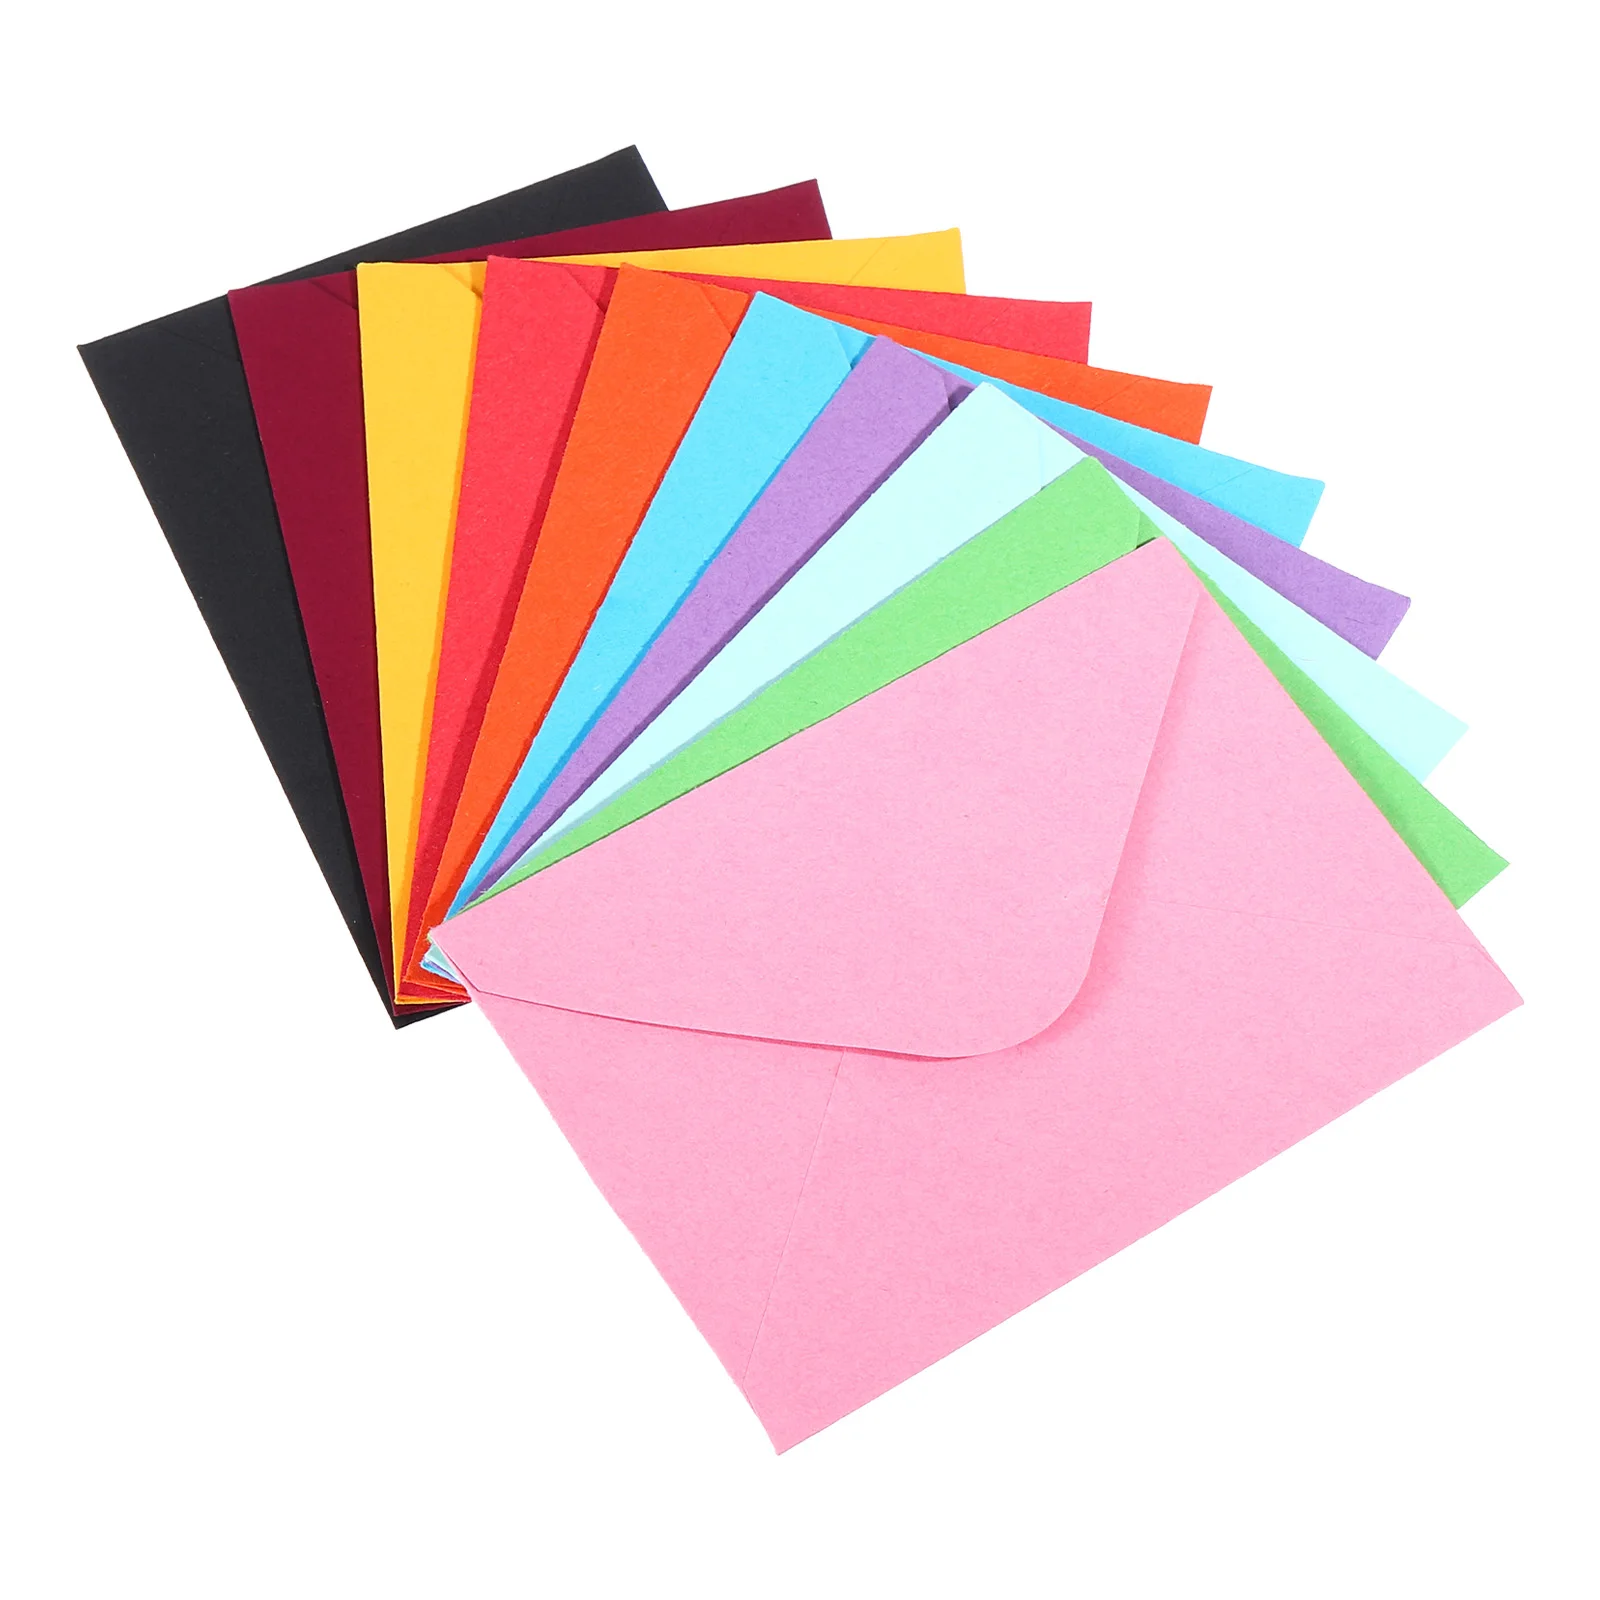 Mini Envelopes de Papel para Convite De Casamento, Cartão De Visita, Envelope Ocidental, 10x7cm, 50 Pcs, 100Pcs